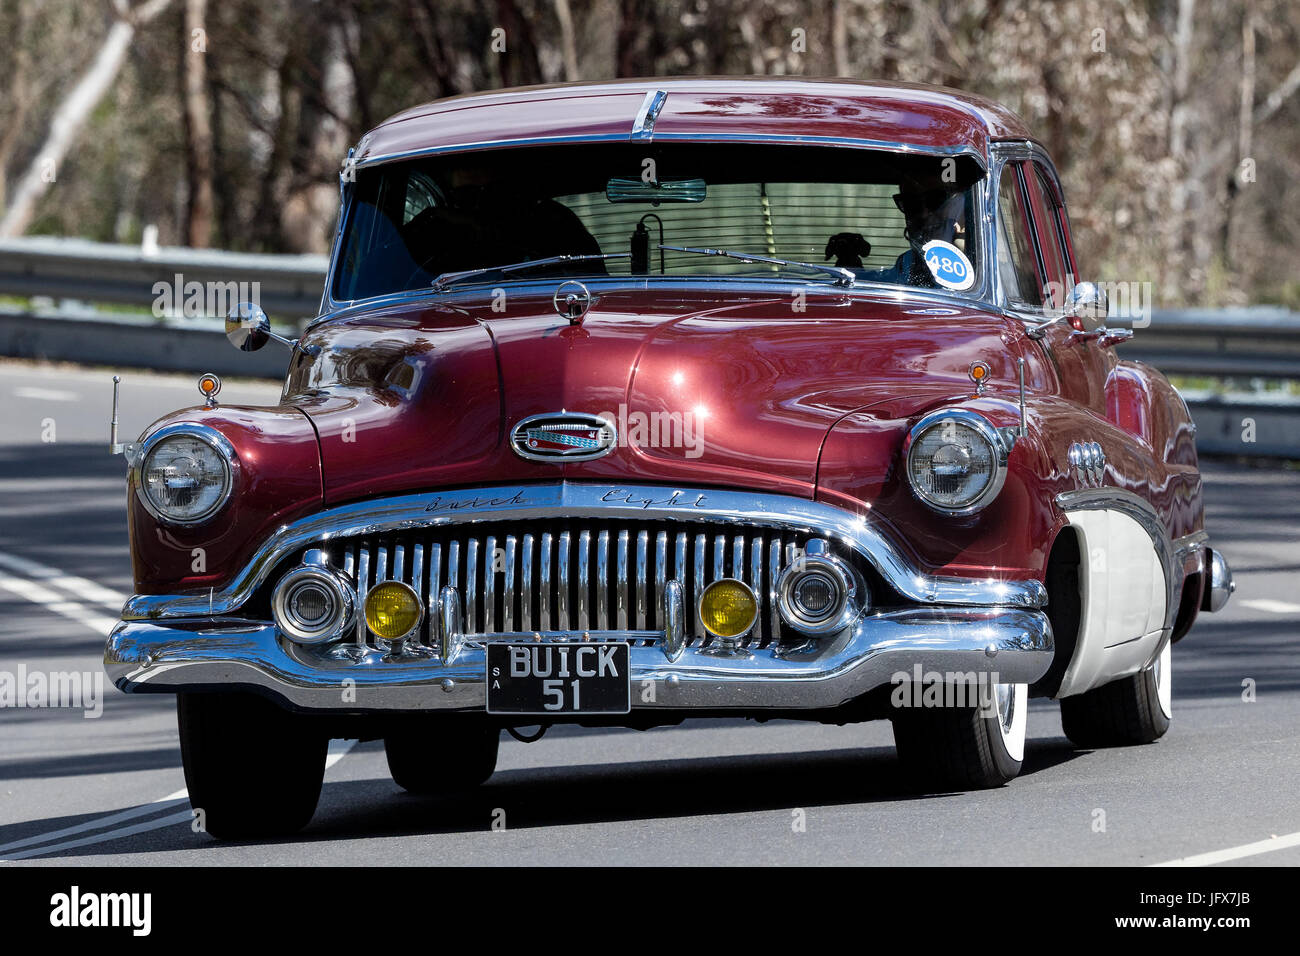 Jahrgang 1951 Buick Super Limousine fahren auf der Landstraße in der Nähe der Stadt Birdwood, South Australia. Stockfoto